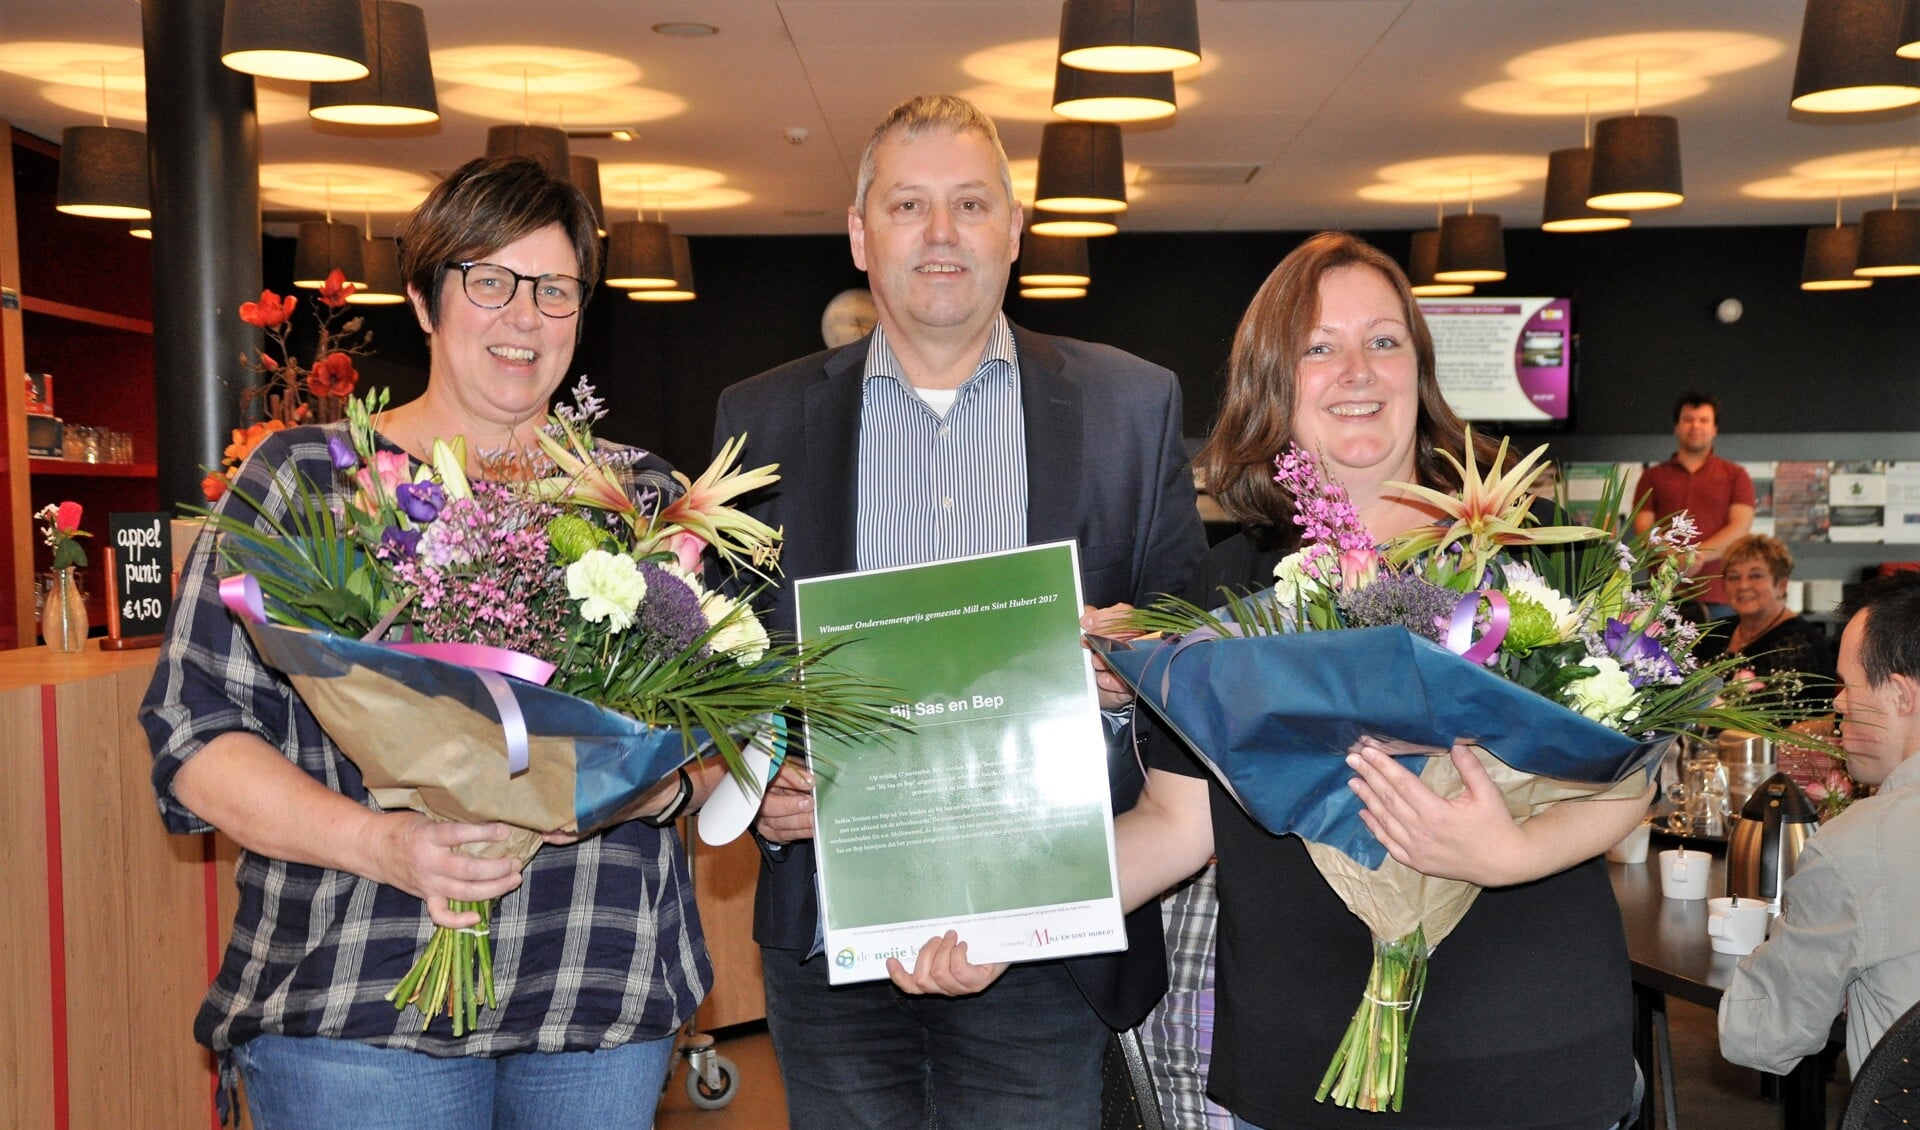 Saskia Toonen en Bep van de Ven flankeren wethouder Jos van den Boogaart die de prijs uitreikte. Foto: Cockie Kremers